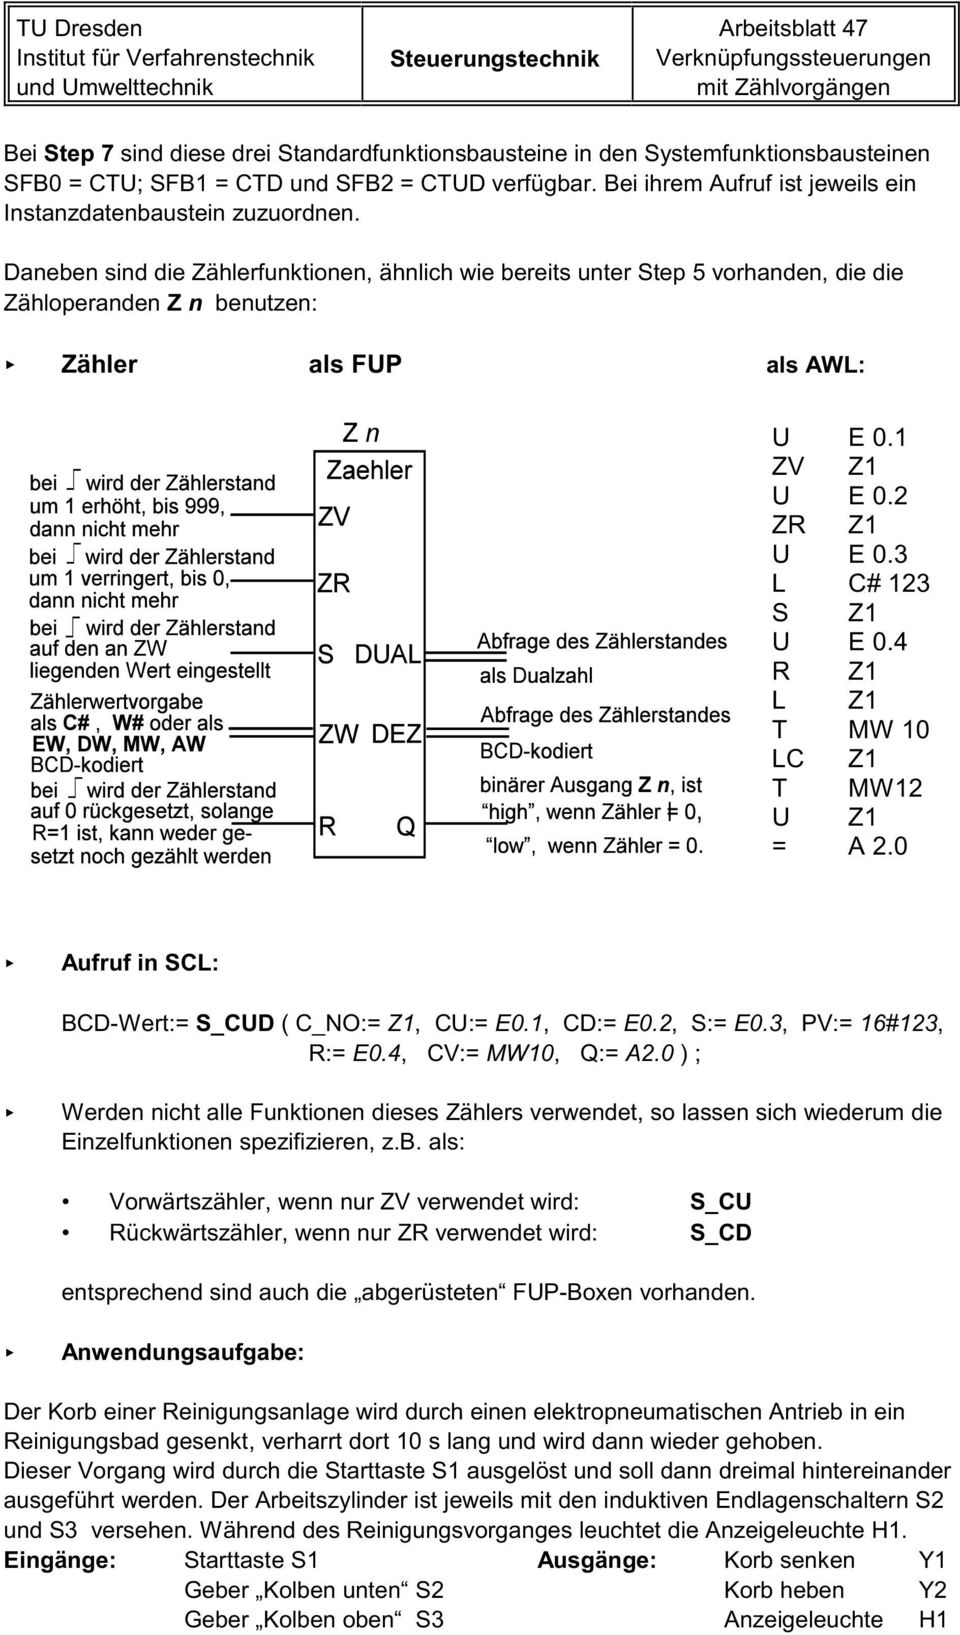 Daneben sind die Zählerfunktionen, ähnlich wie bereits unter Step 5 vorhanden, die die Zähloperanden Z n benutzen: Zähler als FUP als AWL: U E 0.1 ZV Z1 U E 0.2 ZR Z1 U E 0.3 L C# 123 S Z1 U E 0.